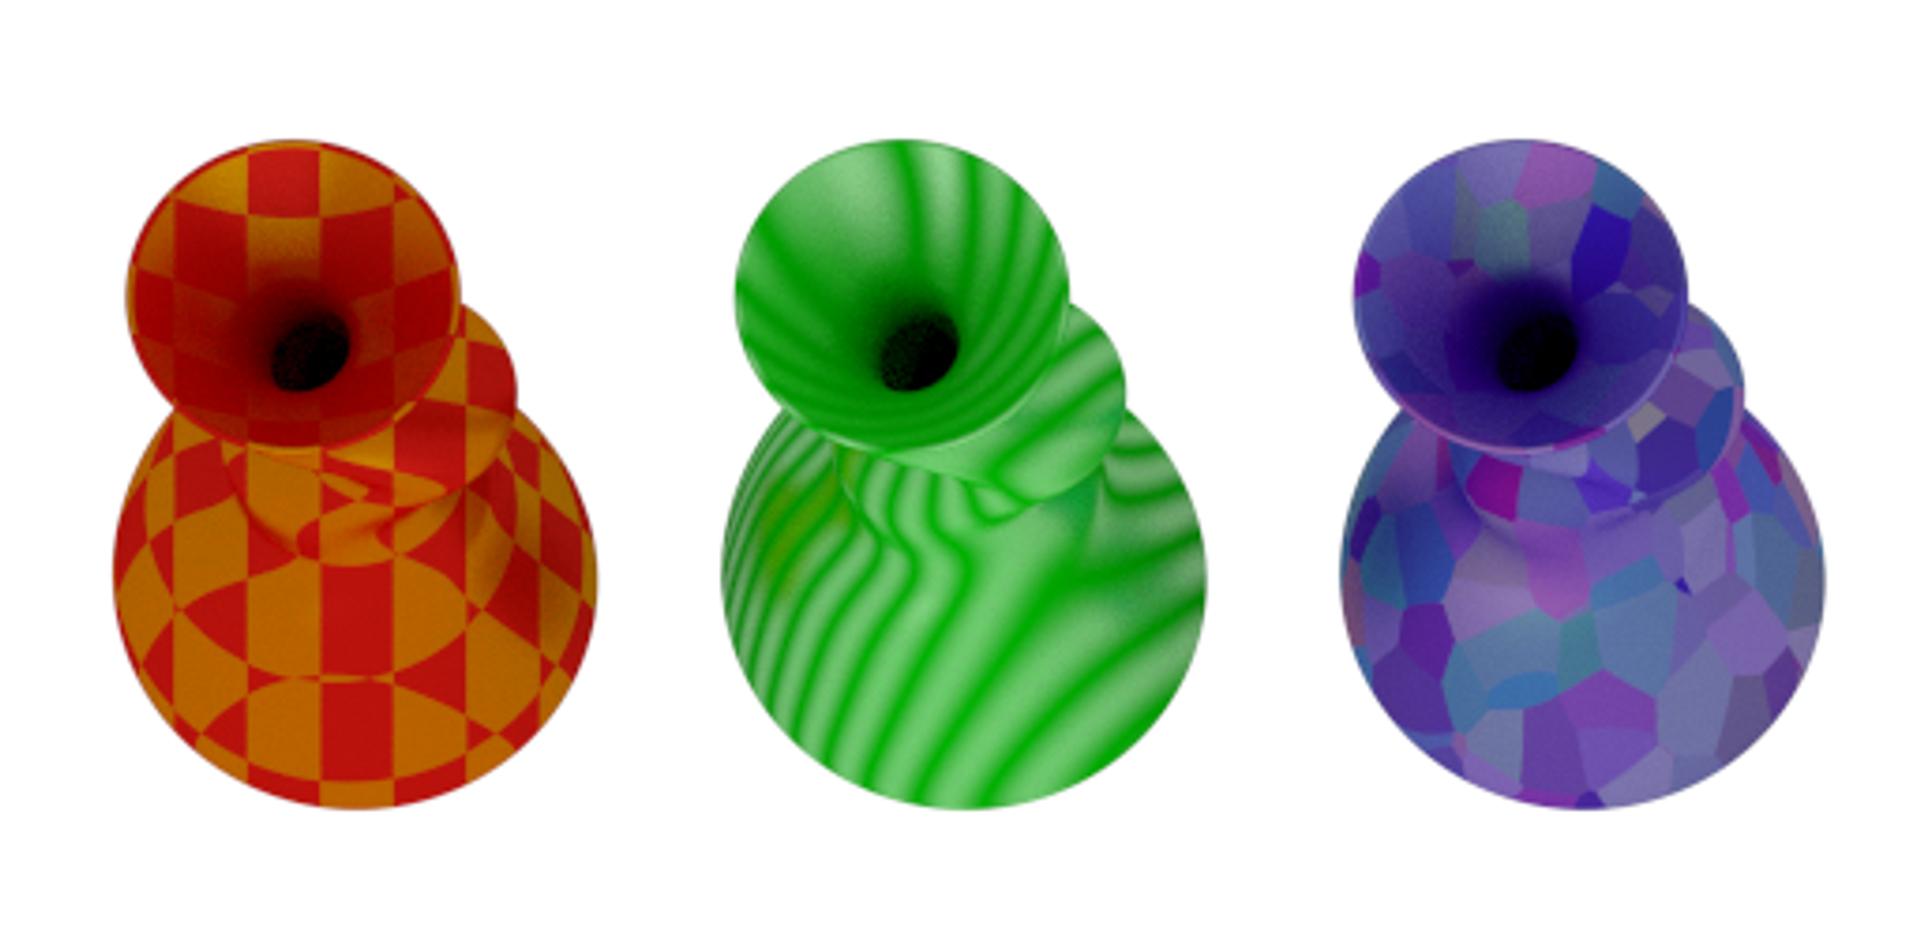 Colorful Vases Using Dual Color PLAs 1.75mm 3d model